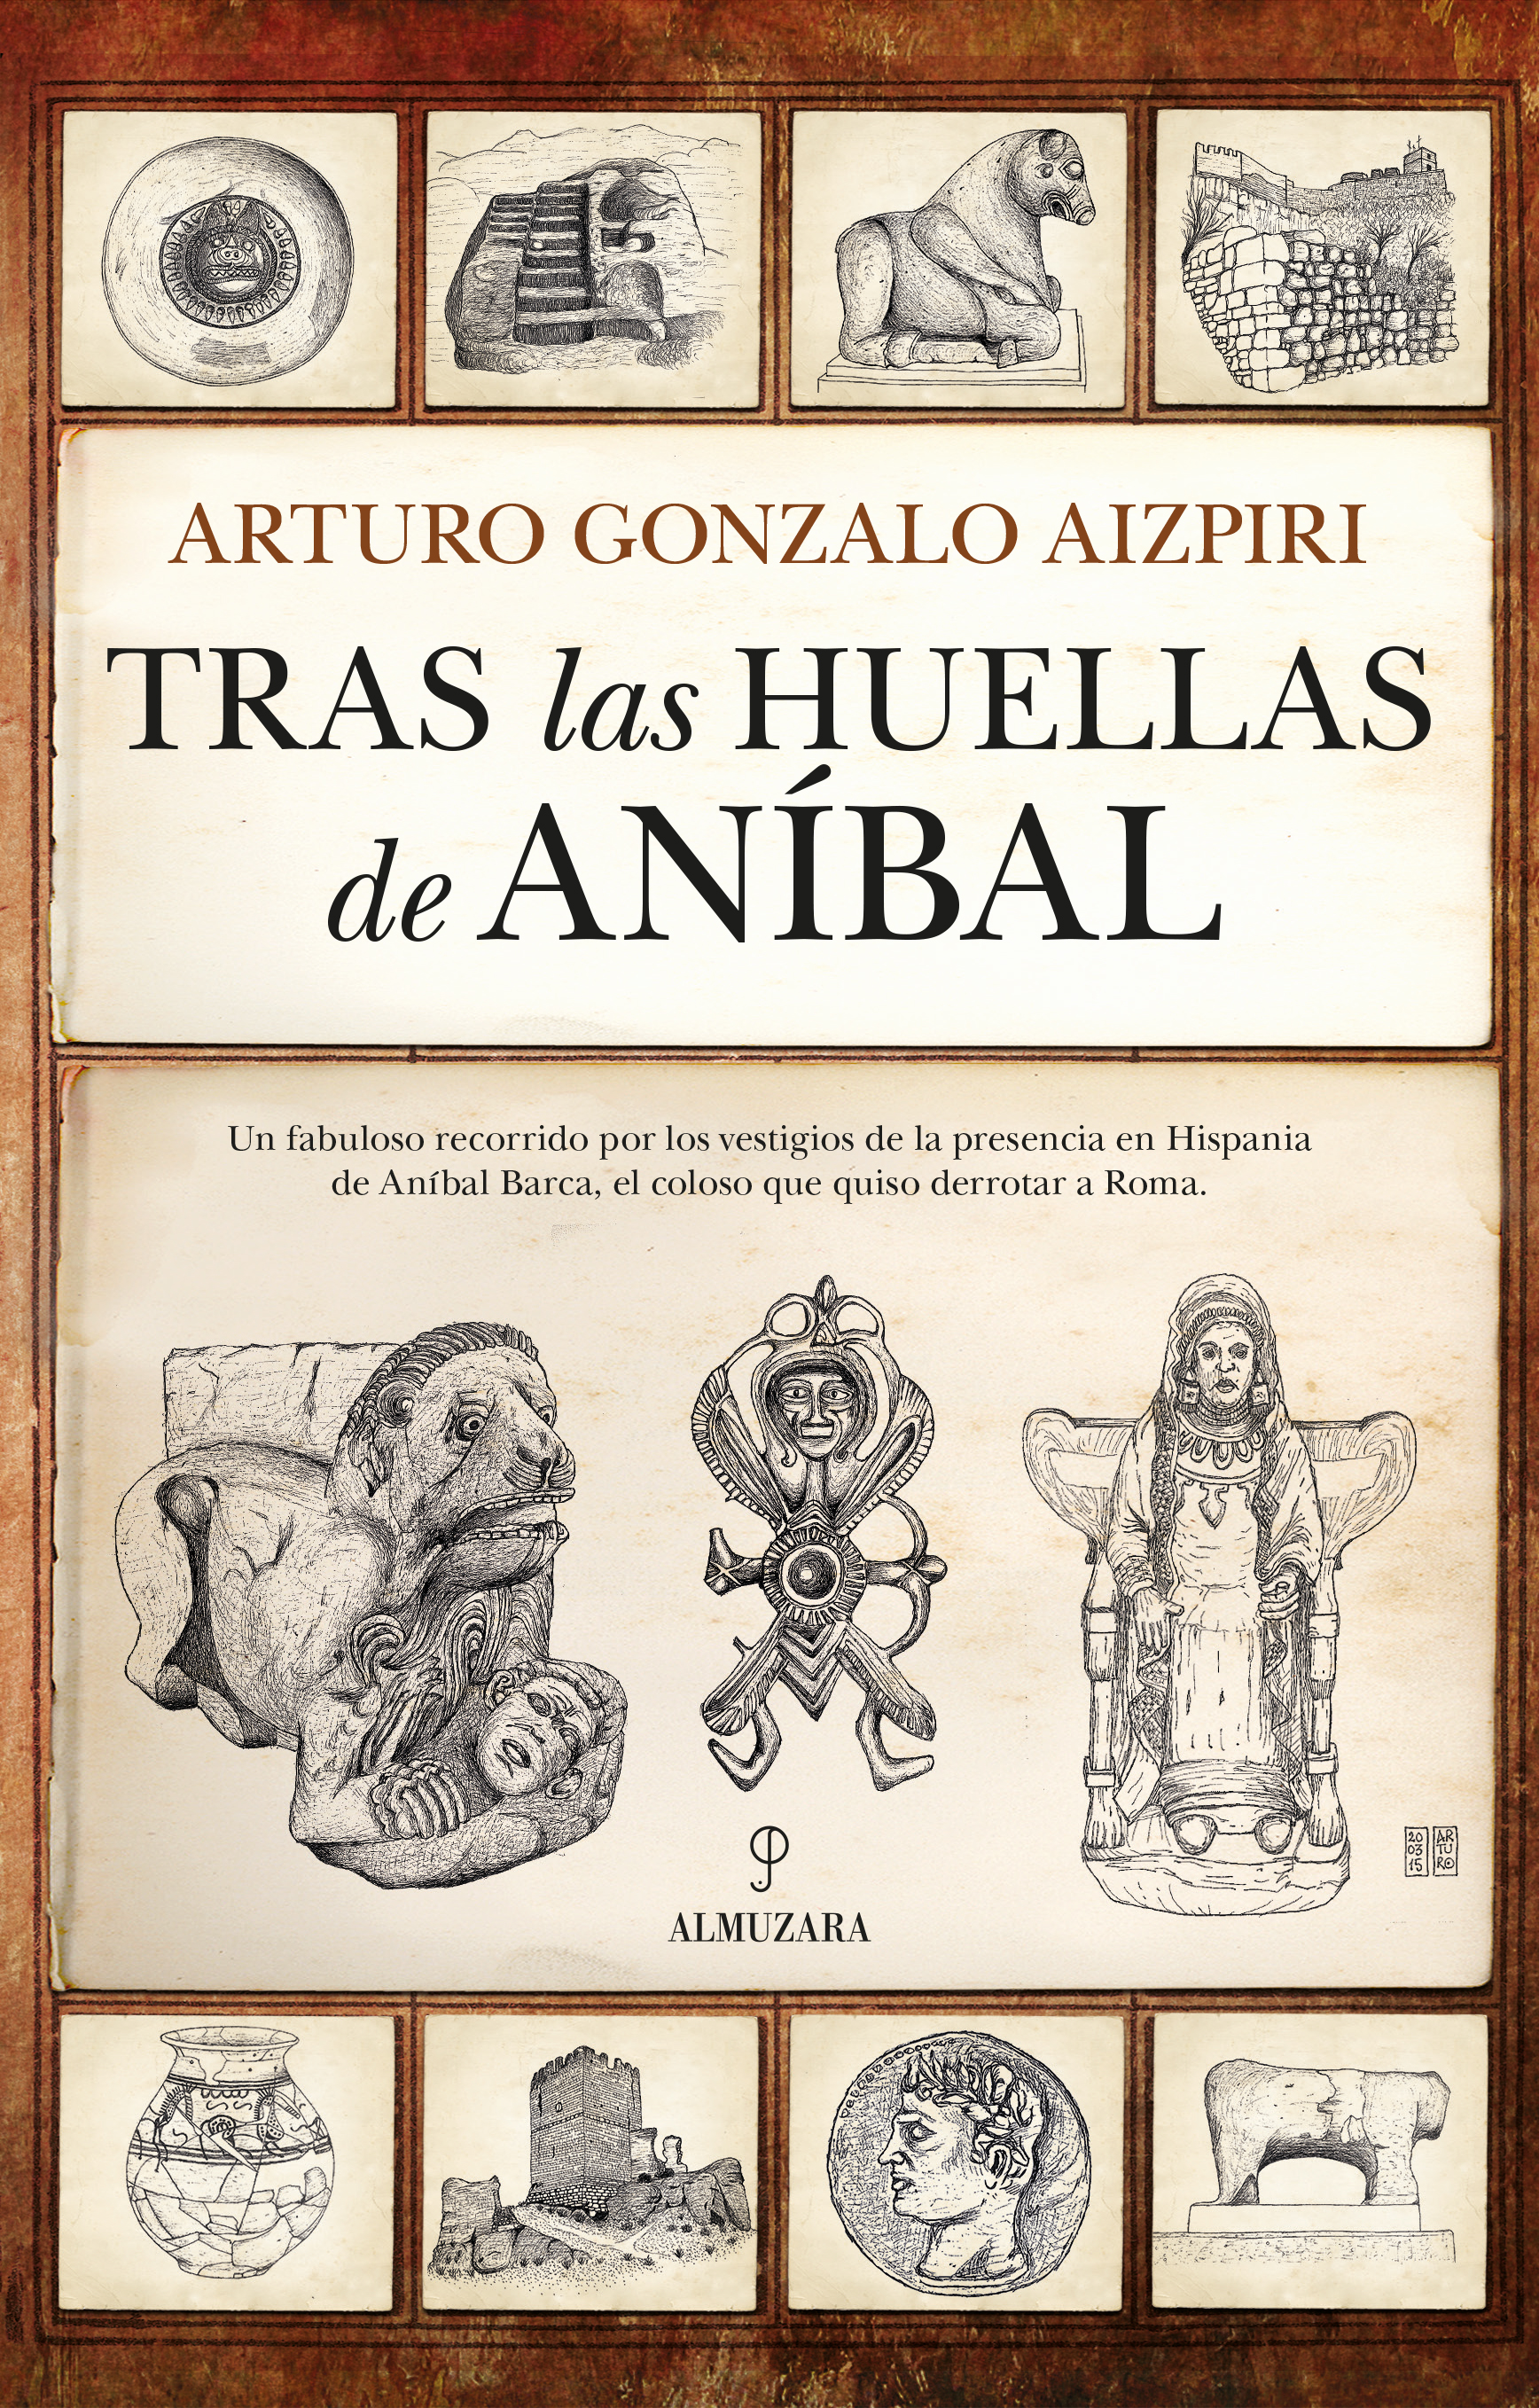 "TRAS LAS HUELLAS DE ANÍBAL" de Arturo Gonzalo Aizpiri, en Editorial Almuzara